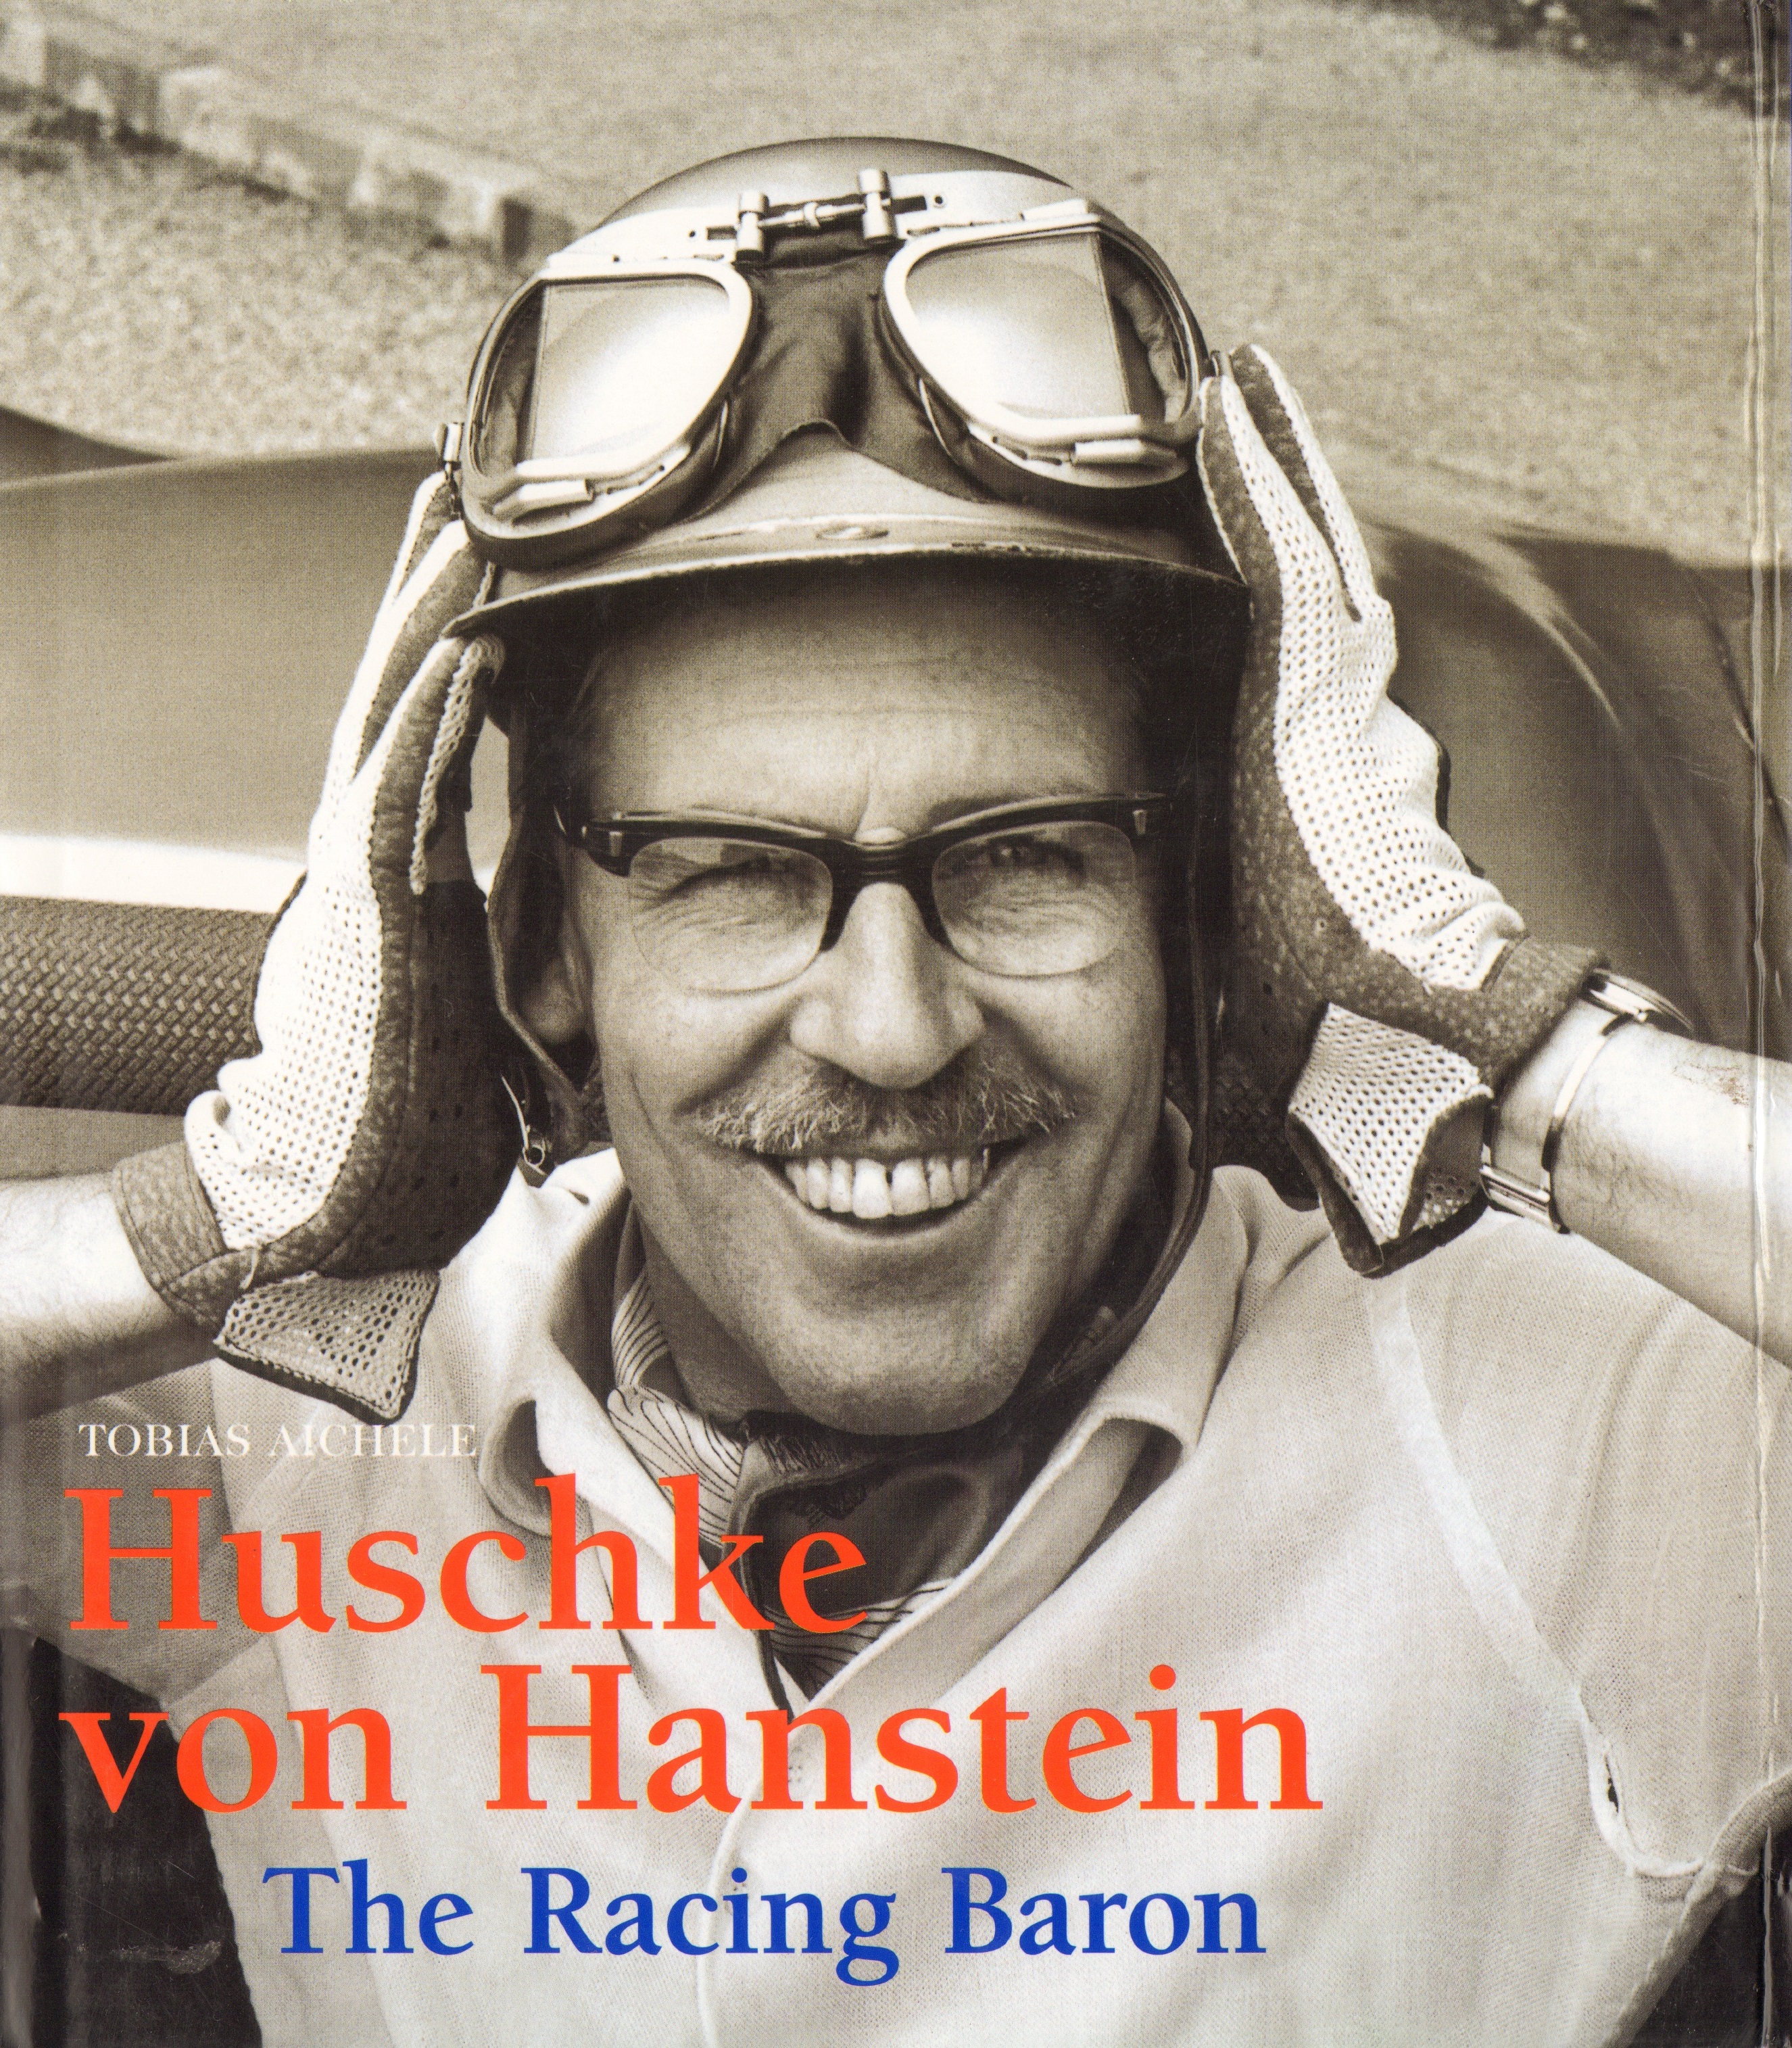 Книга Huschke von Hanstein - The Racing Baron. Автор: Tobias Aichele